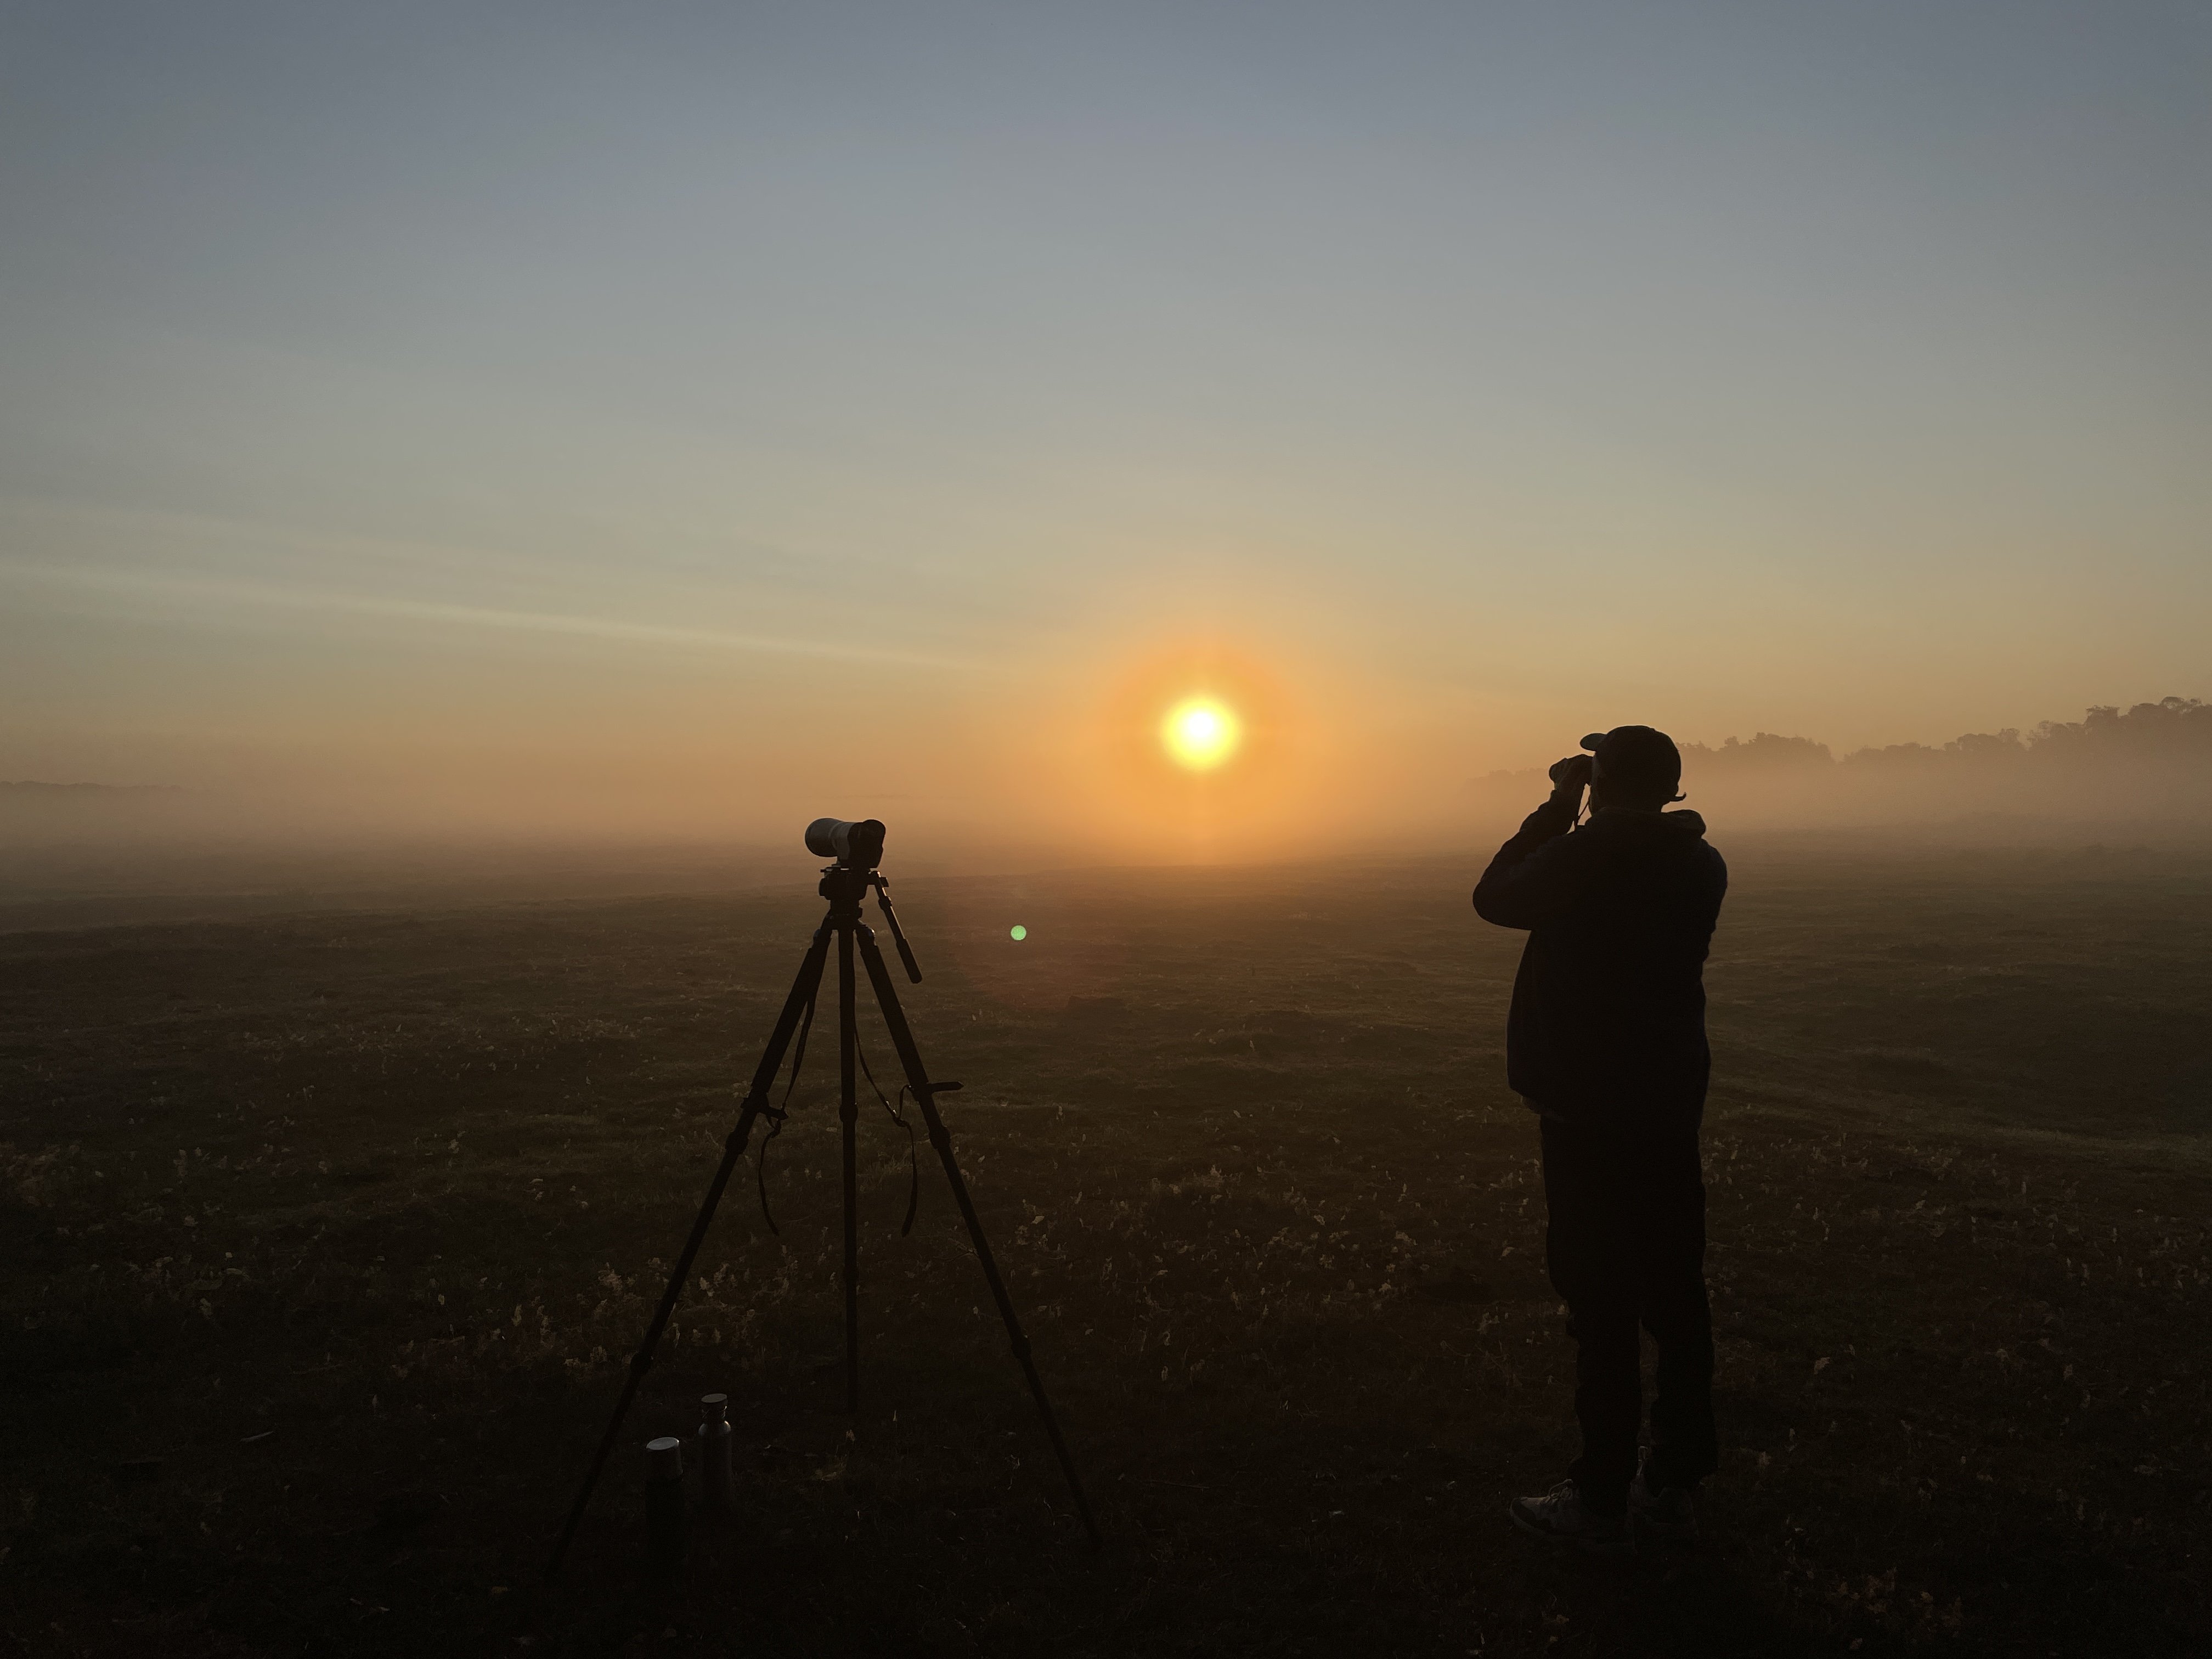 Fågelskådare kikar mot horisonten på en ljunghed en dimmig soluppgång.